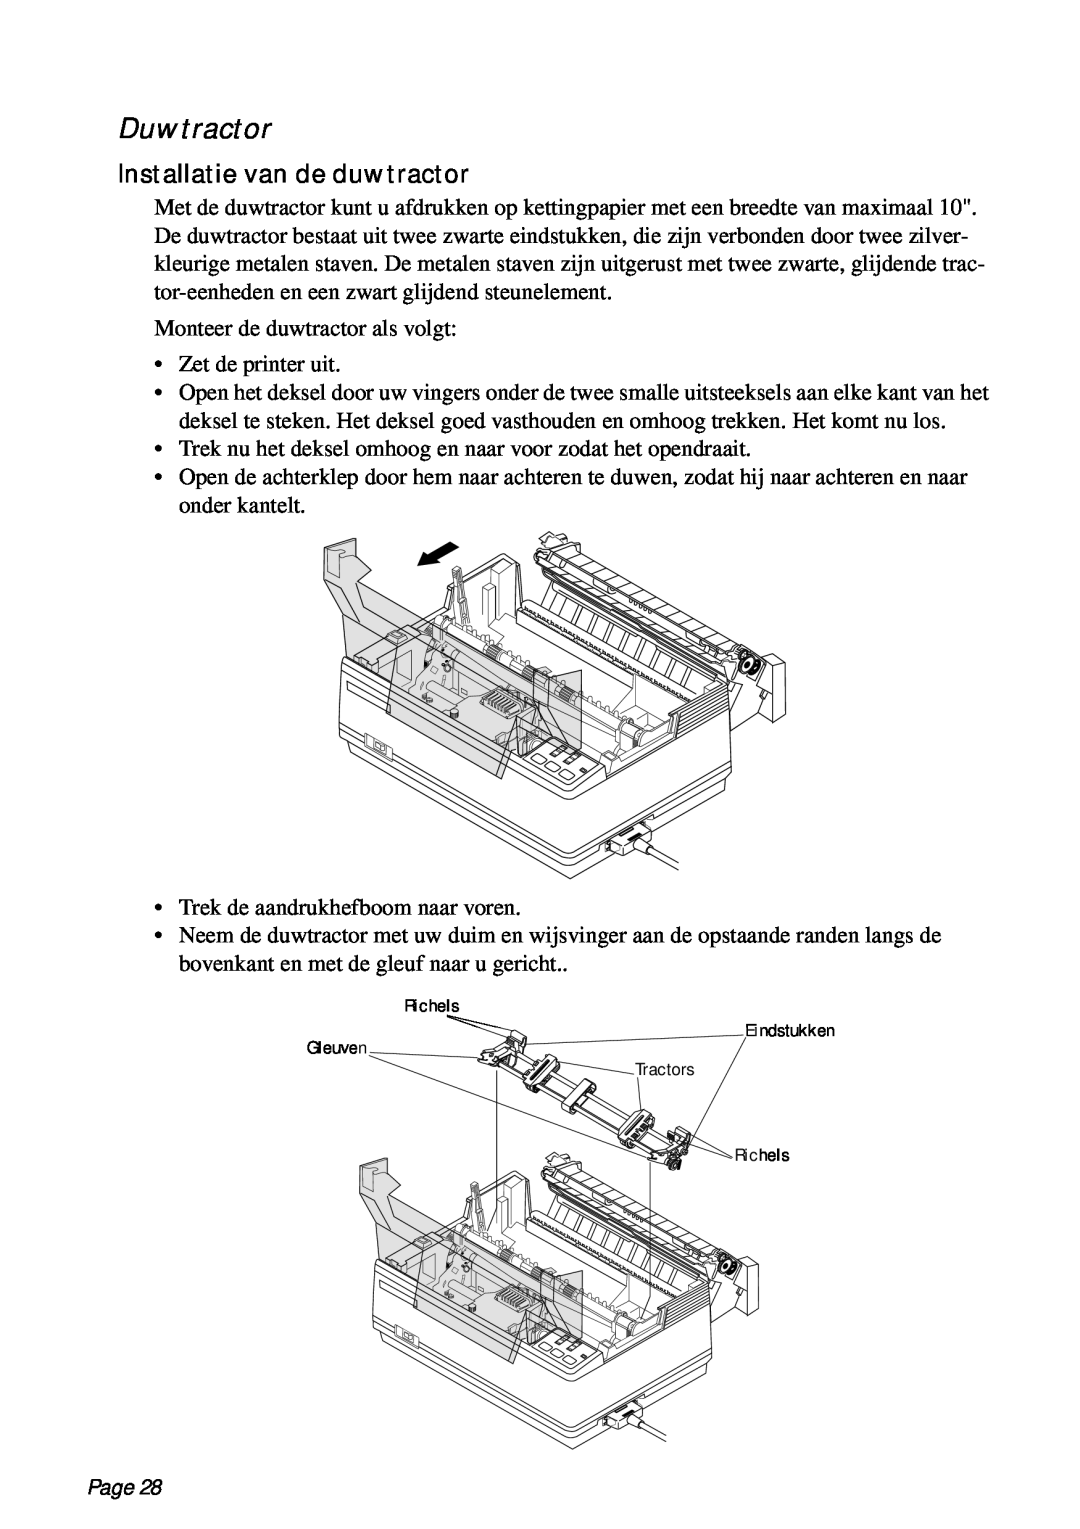 Star Micronics PT-10Q user manual Duwtractor, Installatie van de duwtractor, Page 